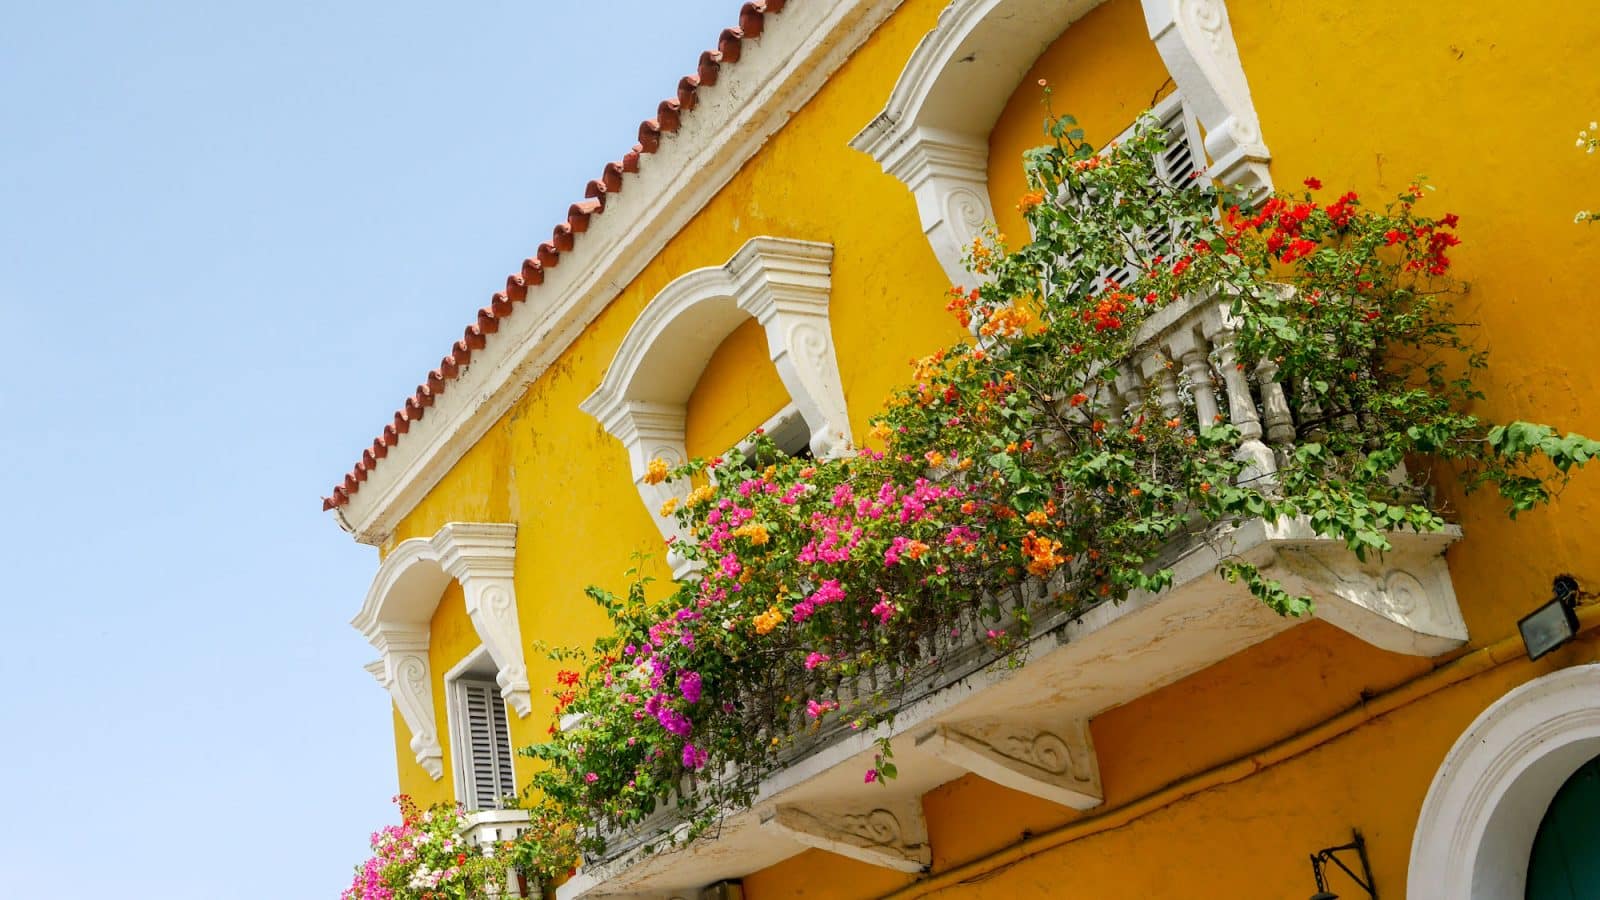 Recorrido por Cartagena de Indias: La joya del Caribe colombiano